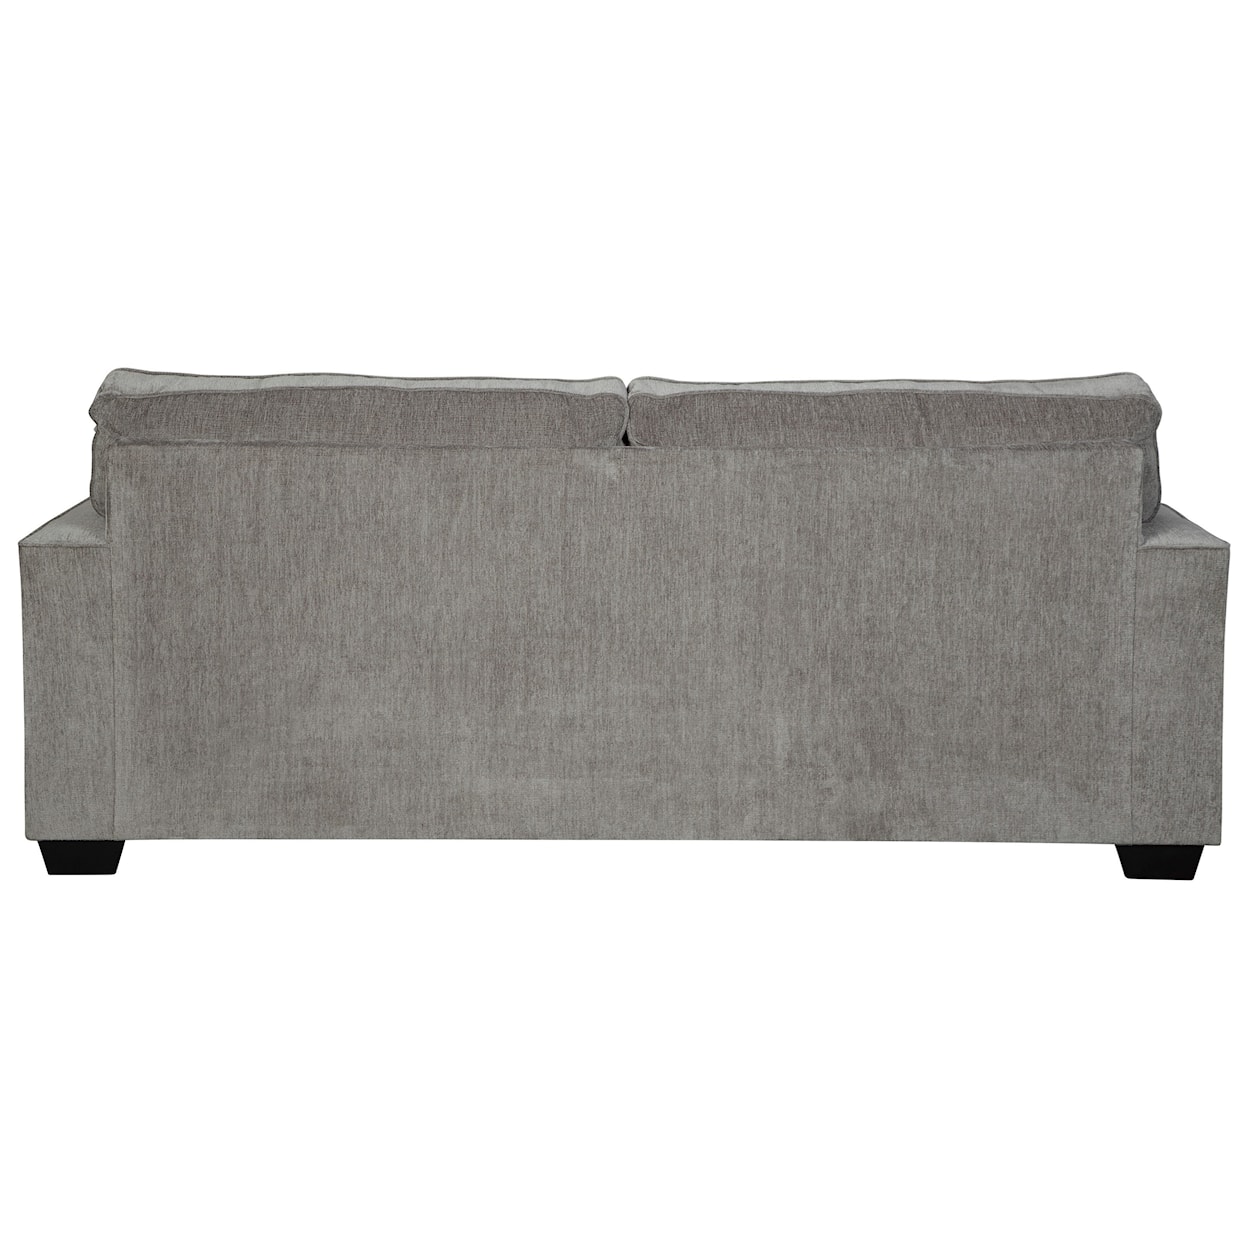 Benchcraft Altari Sofa